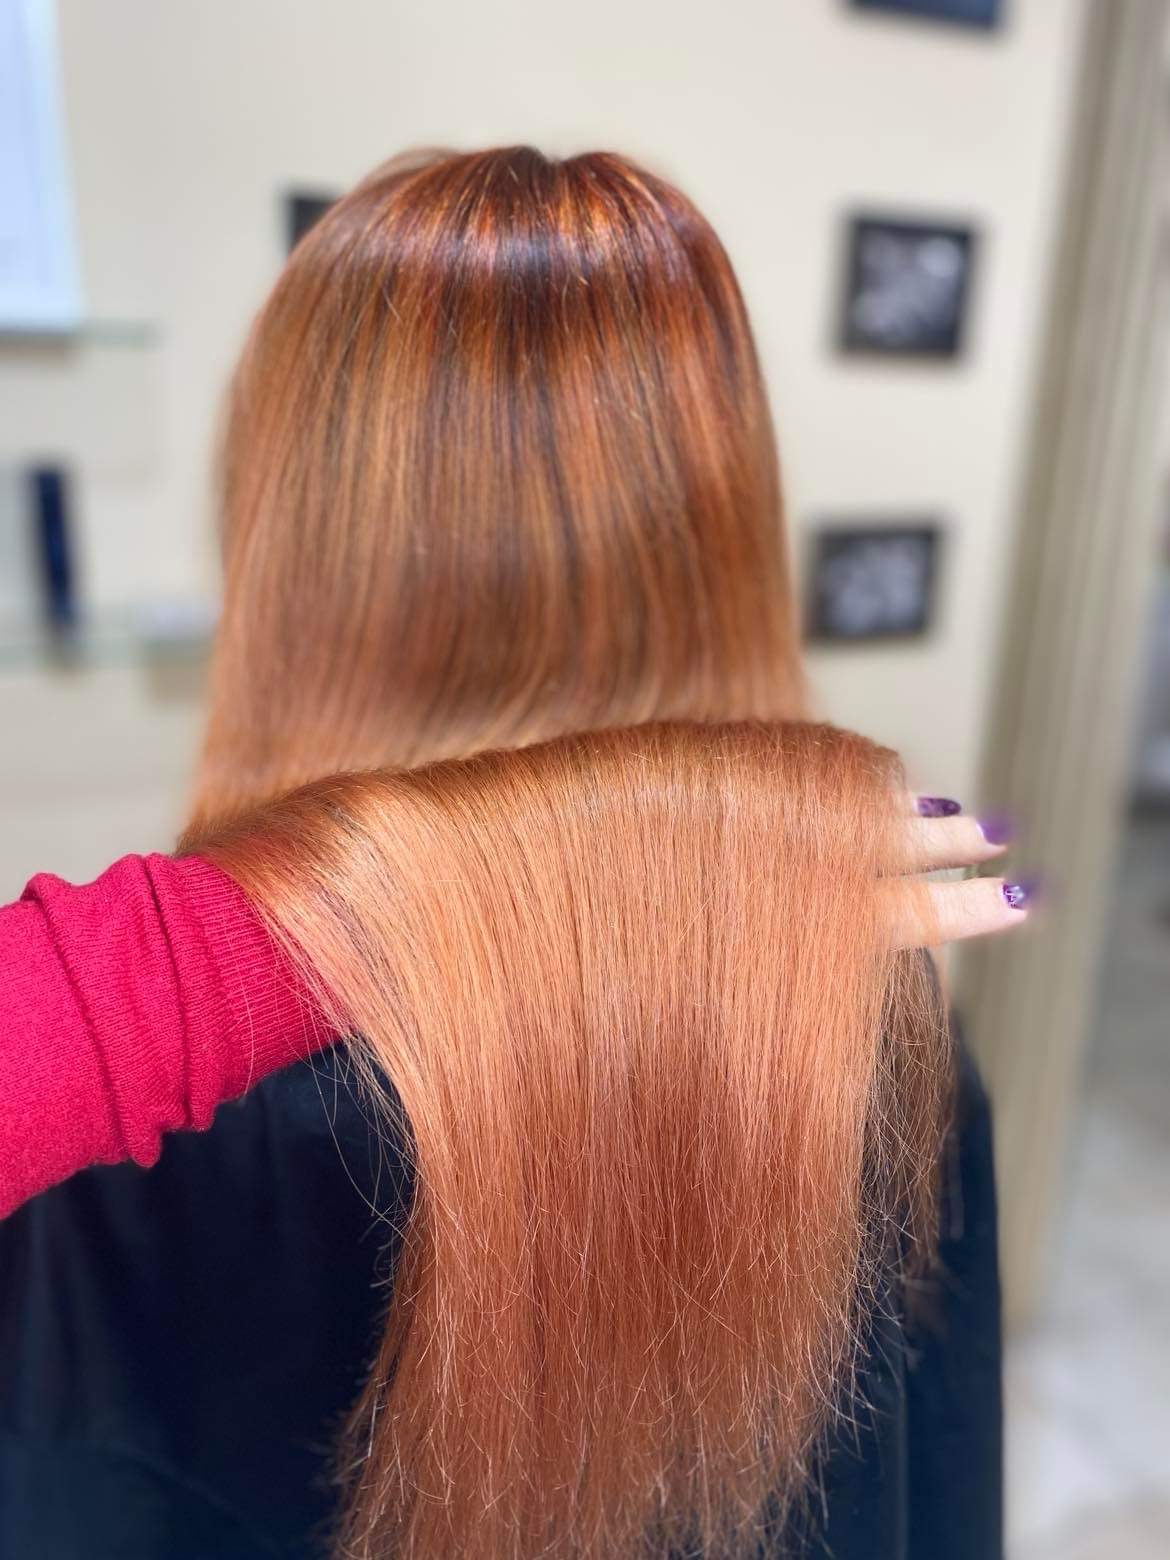 Bildet viser et bakhode med langt, rødt hår som skal klippes på frisørsalong